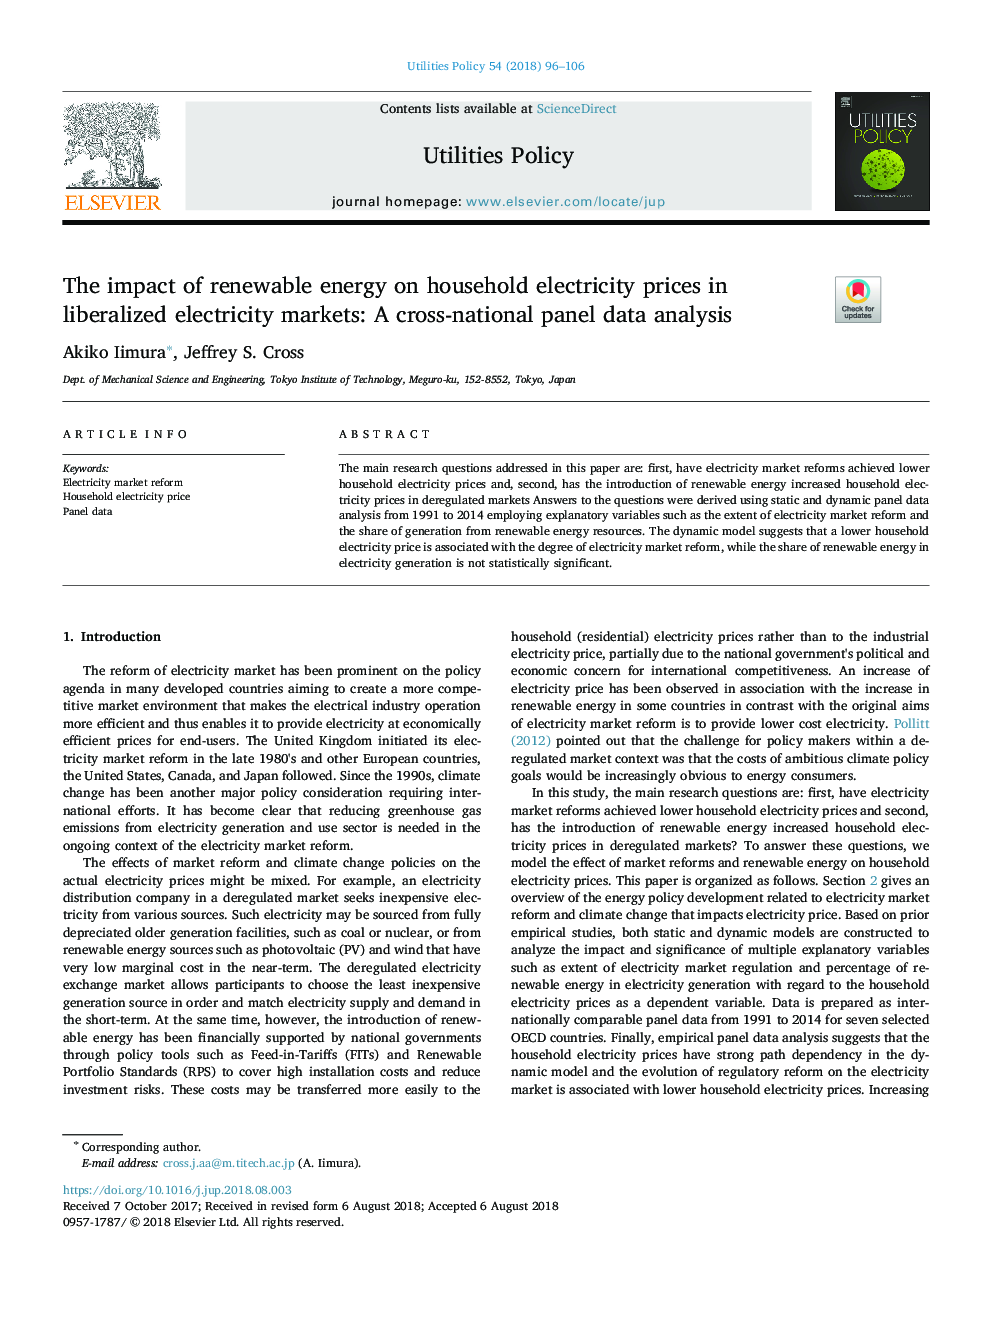 تأثیر انرژی تجدیدپذیر بر قیمت برق خانوارها در بازارهای برق لیبرالیزه شده: تجزیه و تحلیل دادههای پانل بینالمللی